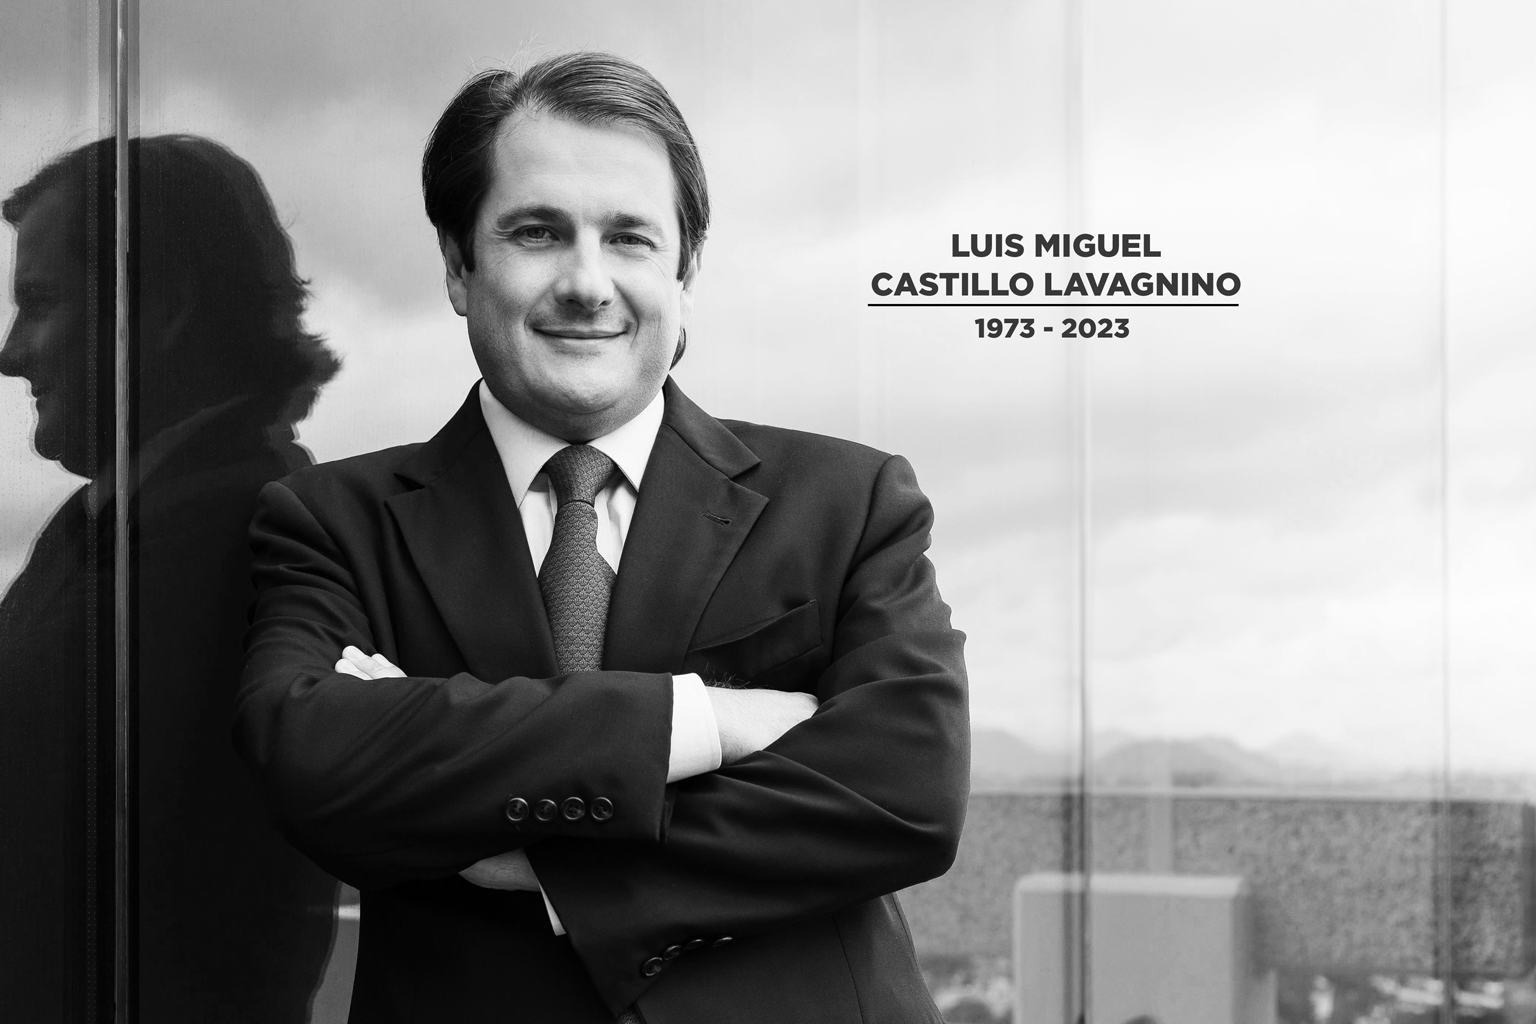 Luis Miguel Castillo